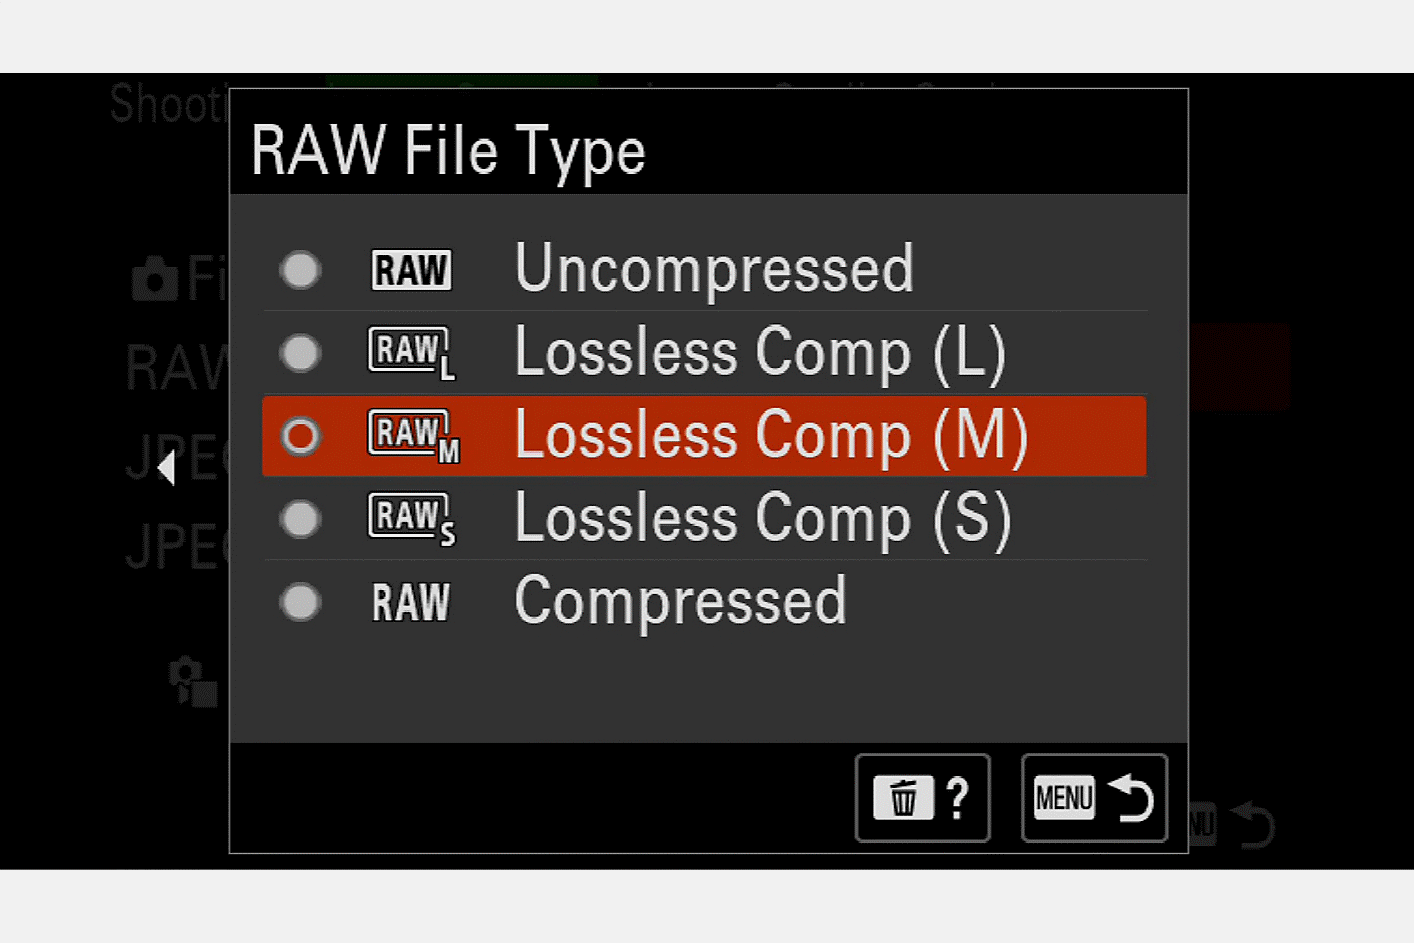 Imagen de la pantalla de la cámara para seleccionar el tipo de archivo RAW